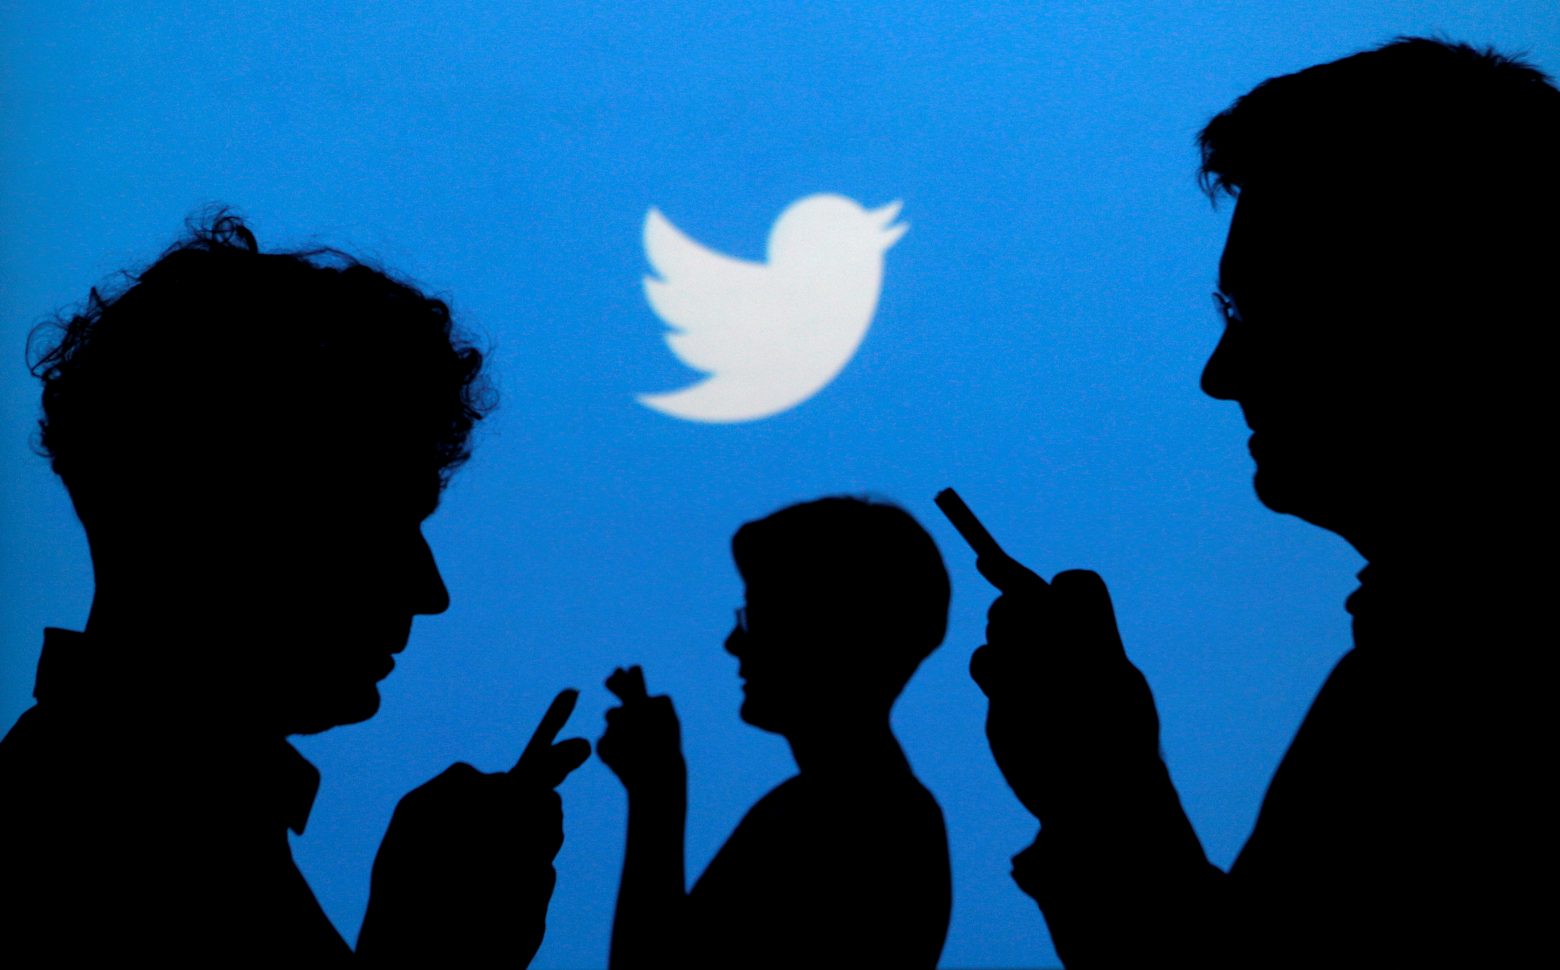 Ισπανία: 15 μήνες φυλάκισης για δημοσίευση ψευδούς είδησης στο twitter